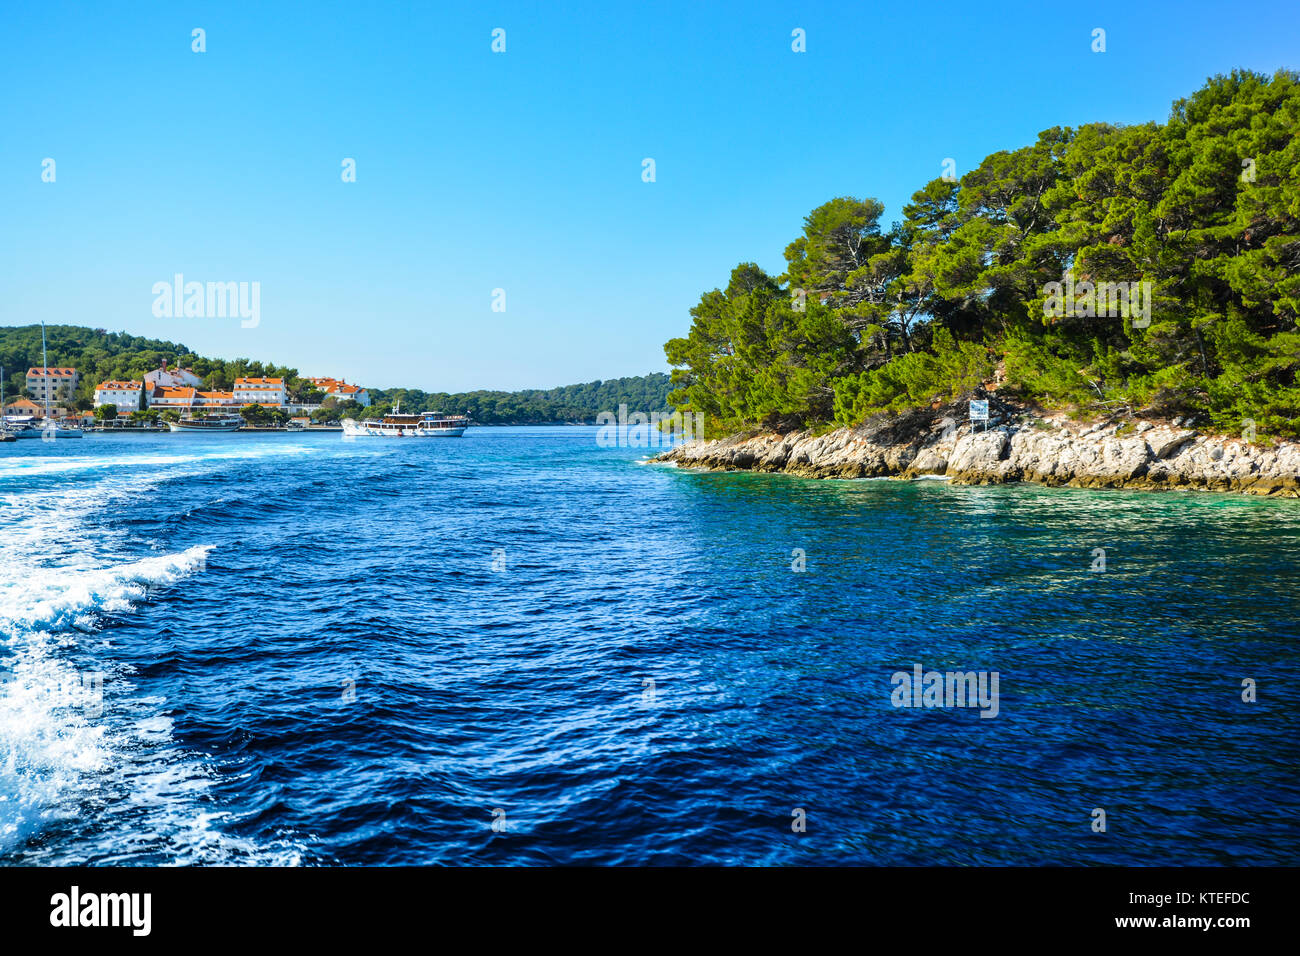 Ciudad costera, barcos e islas en la costa dálmata del mar Adriático, cerca de Dubrovnik, Croacia Foto de stock